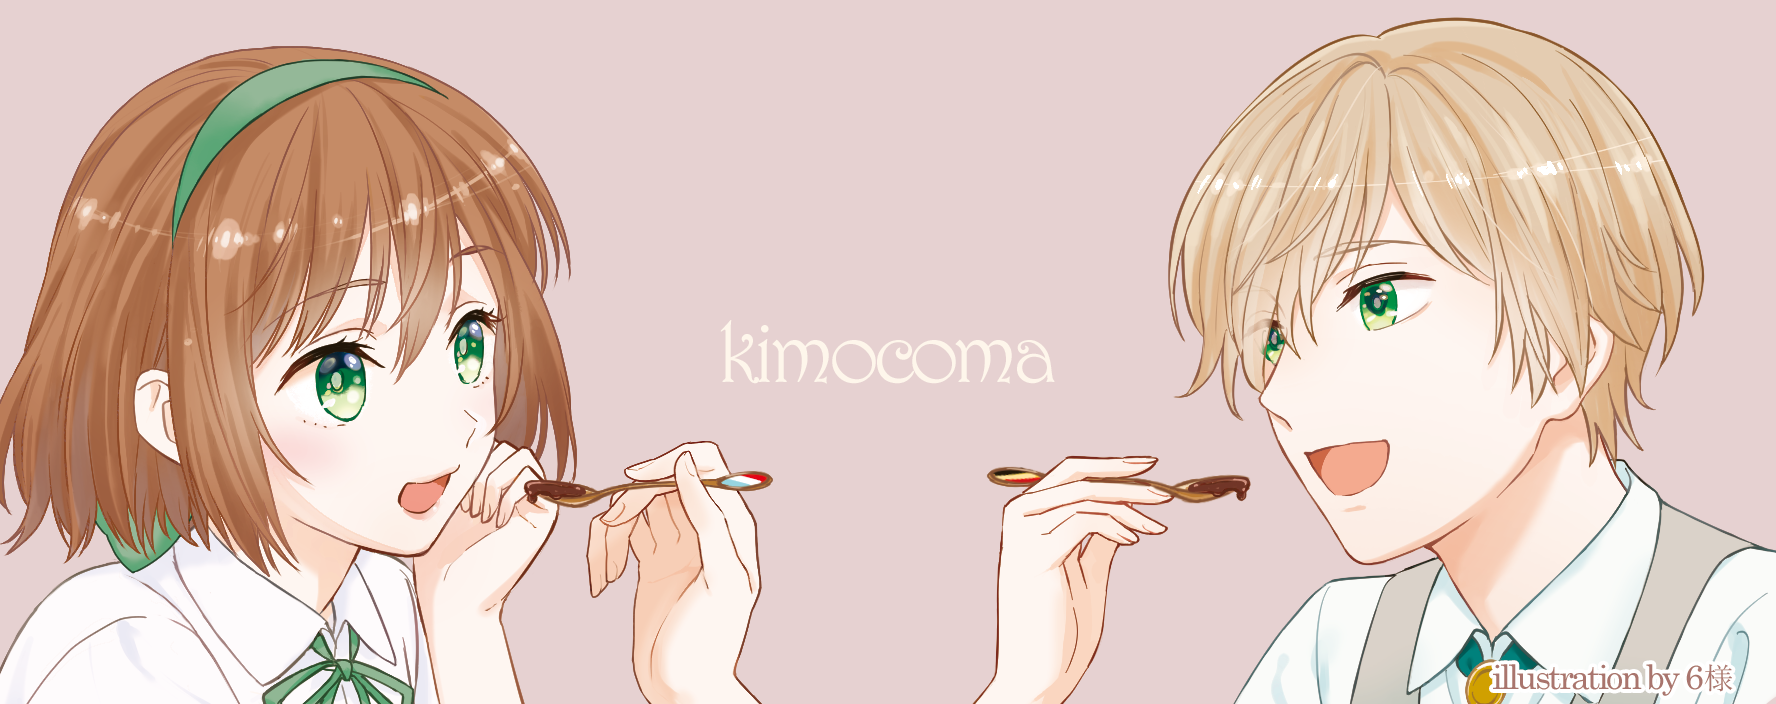 kimocoma